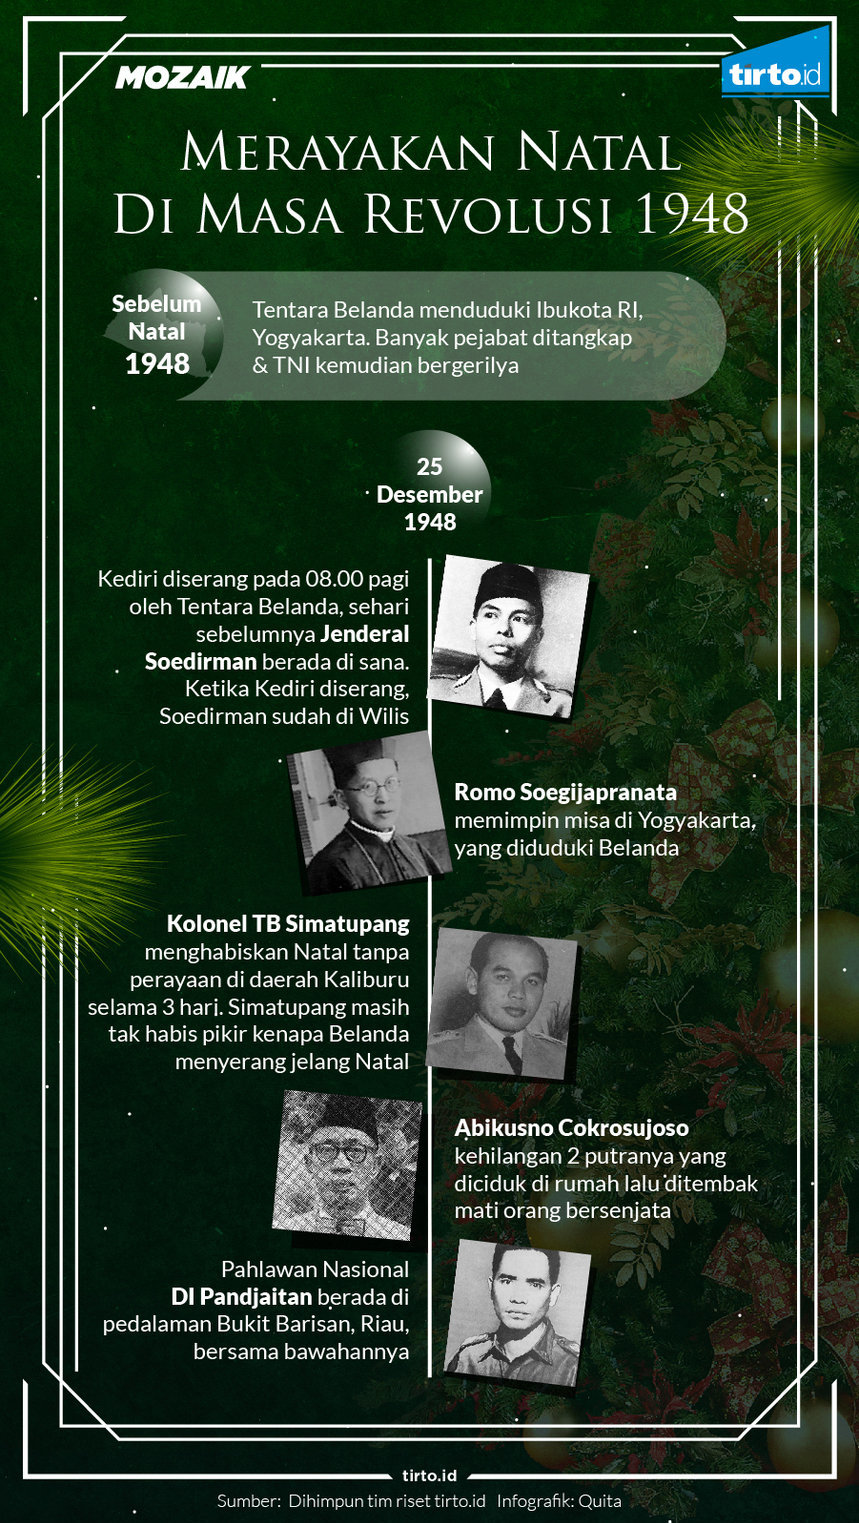 Infografik Mozaik merayakan natal di masa revolusi 1948